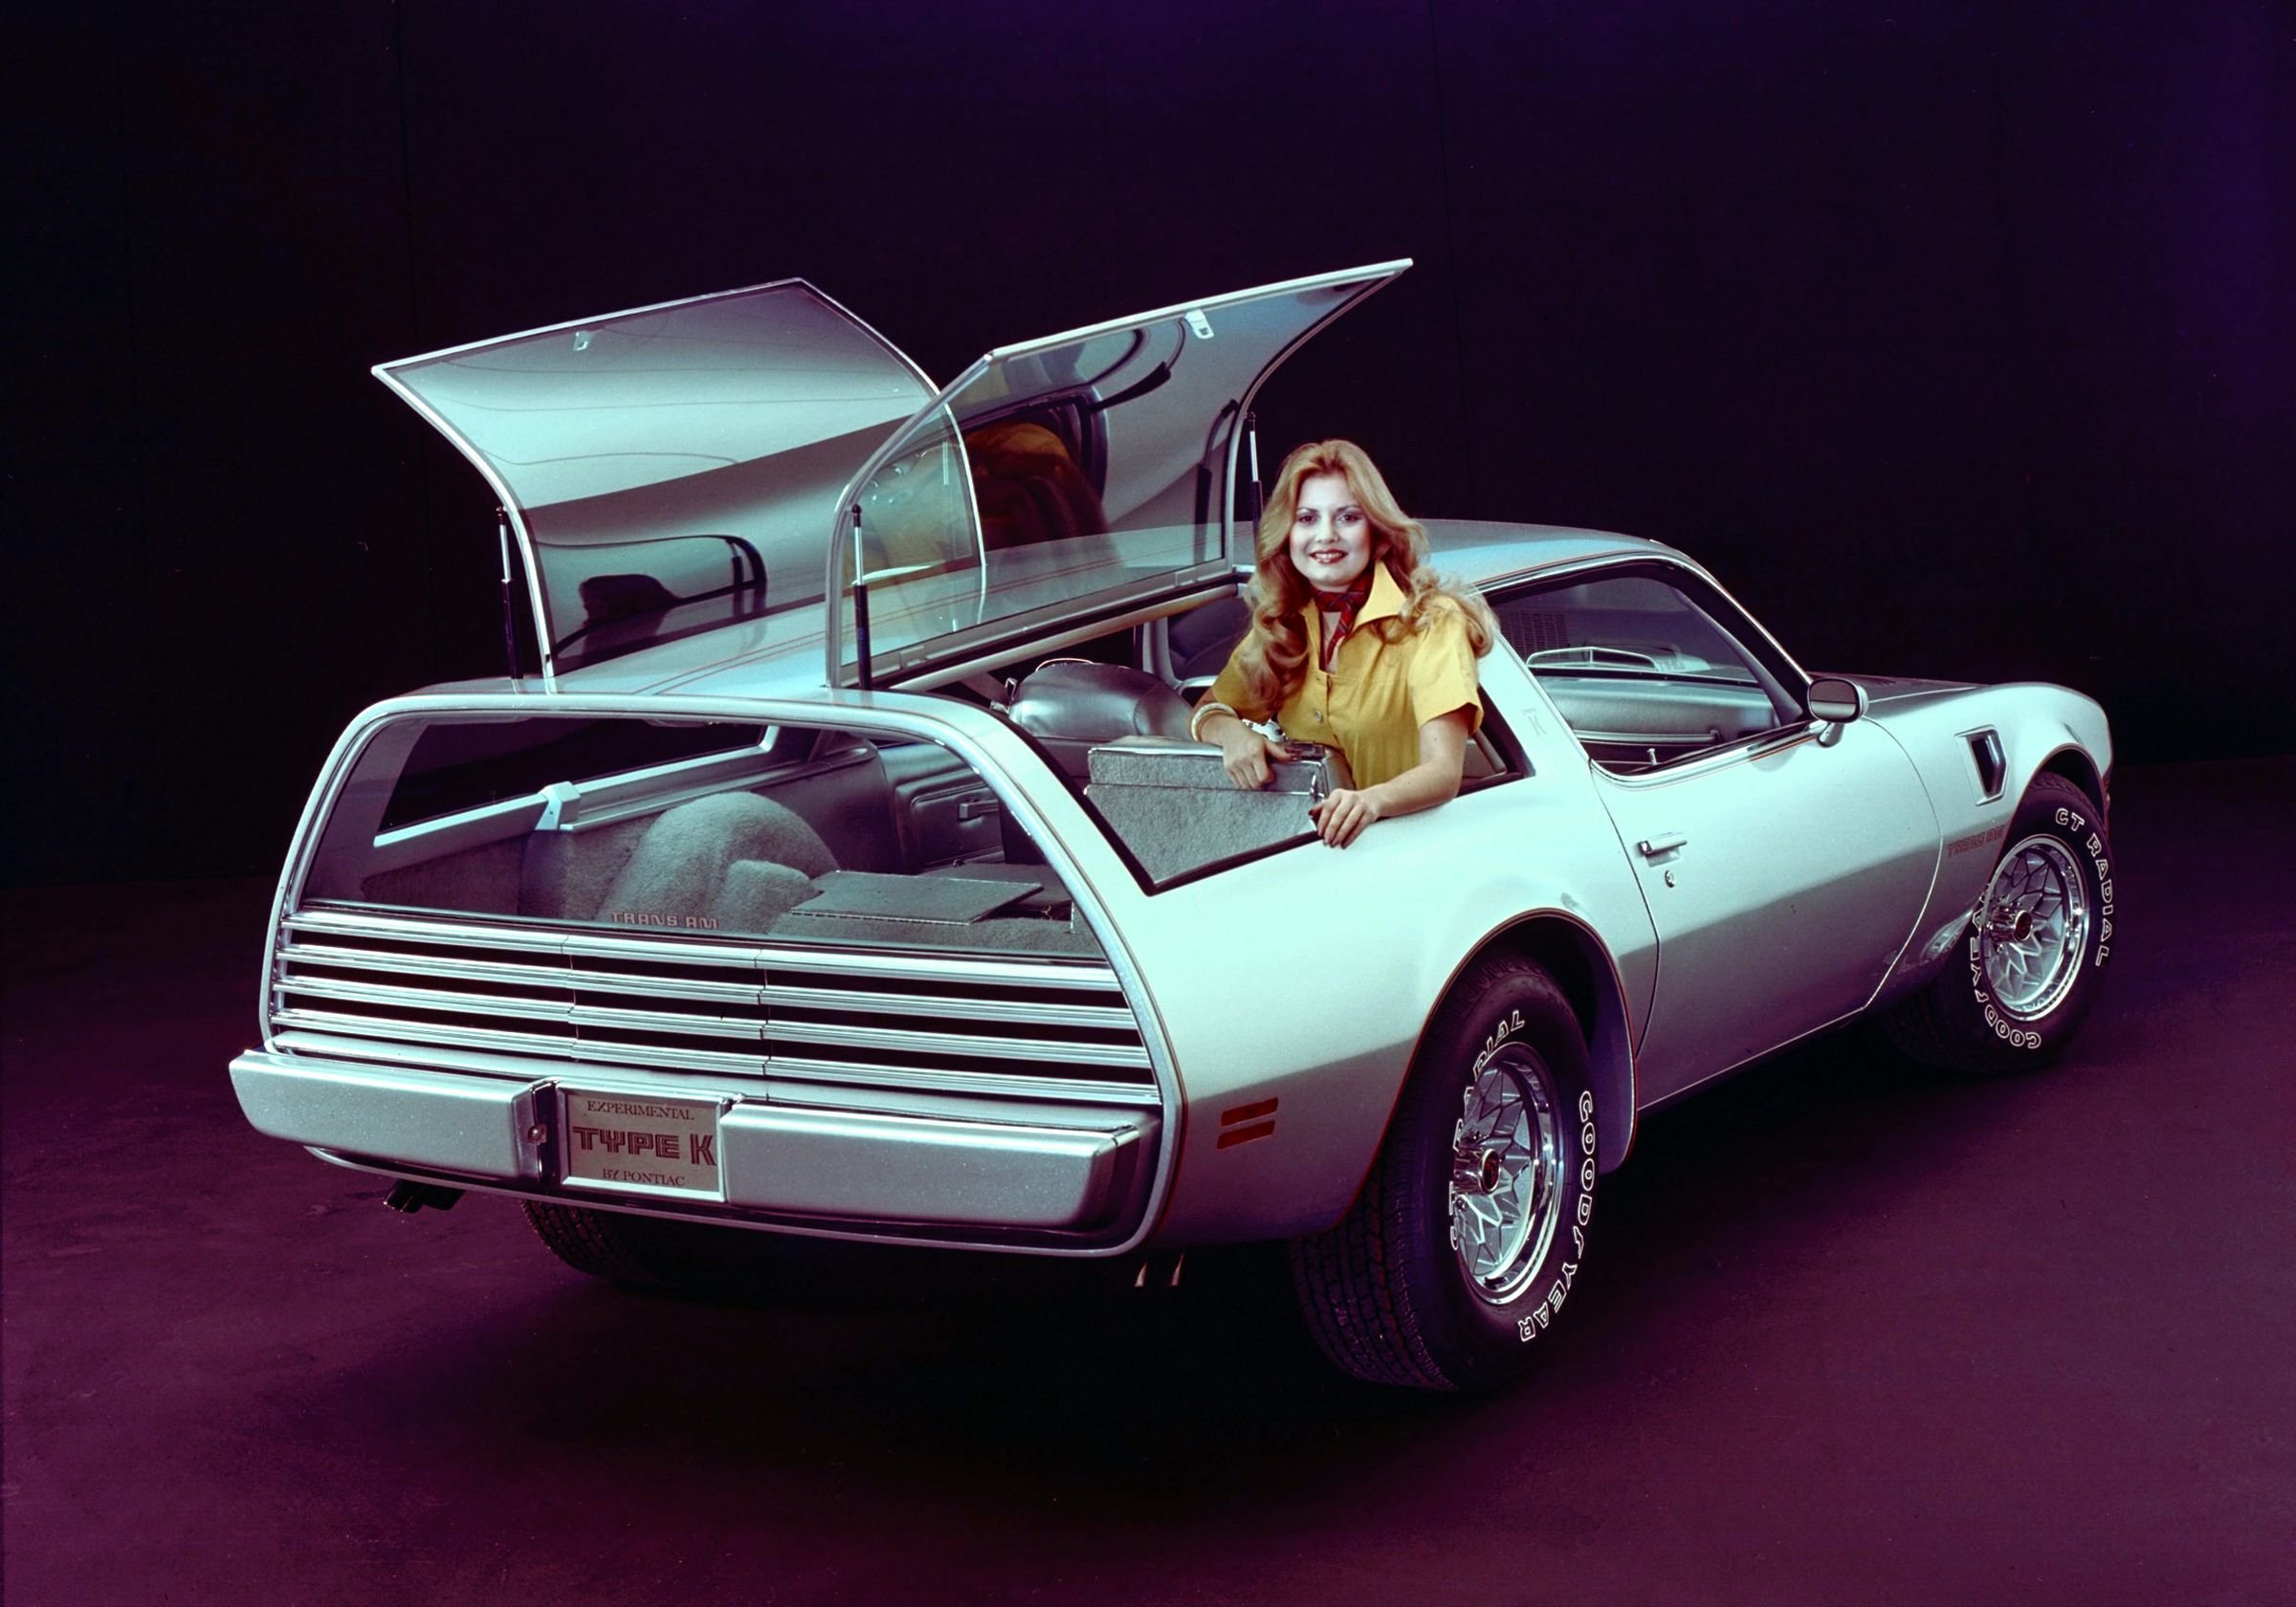 Музыка в машину 80 90 зарубежные. Понтиак 80. Pontiac 80s. Понтиак 1977. Pontiac Kammback Type k 1977.